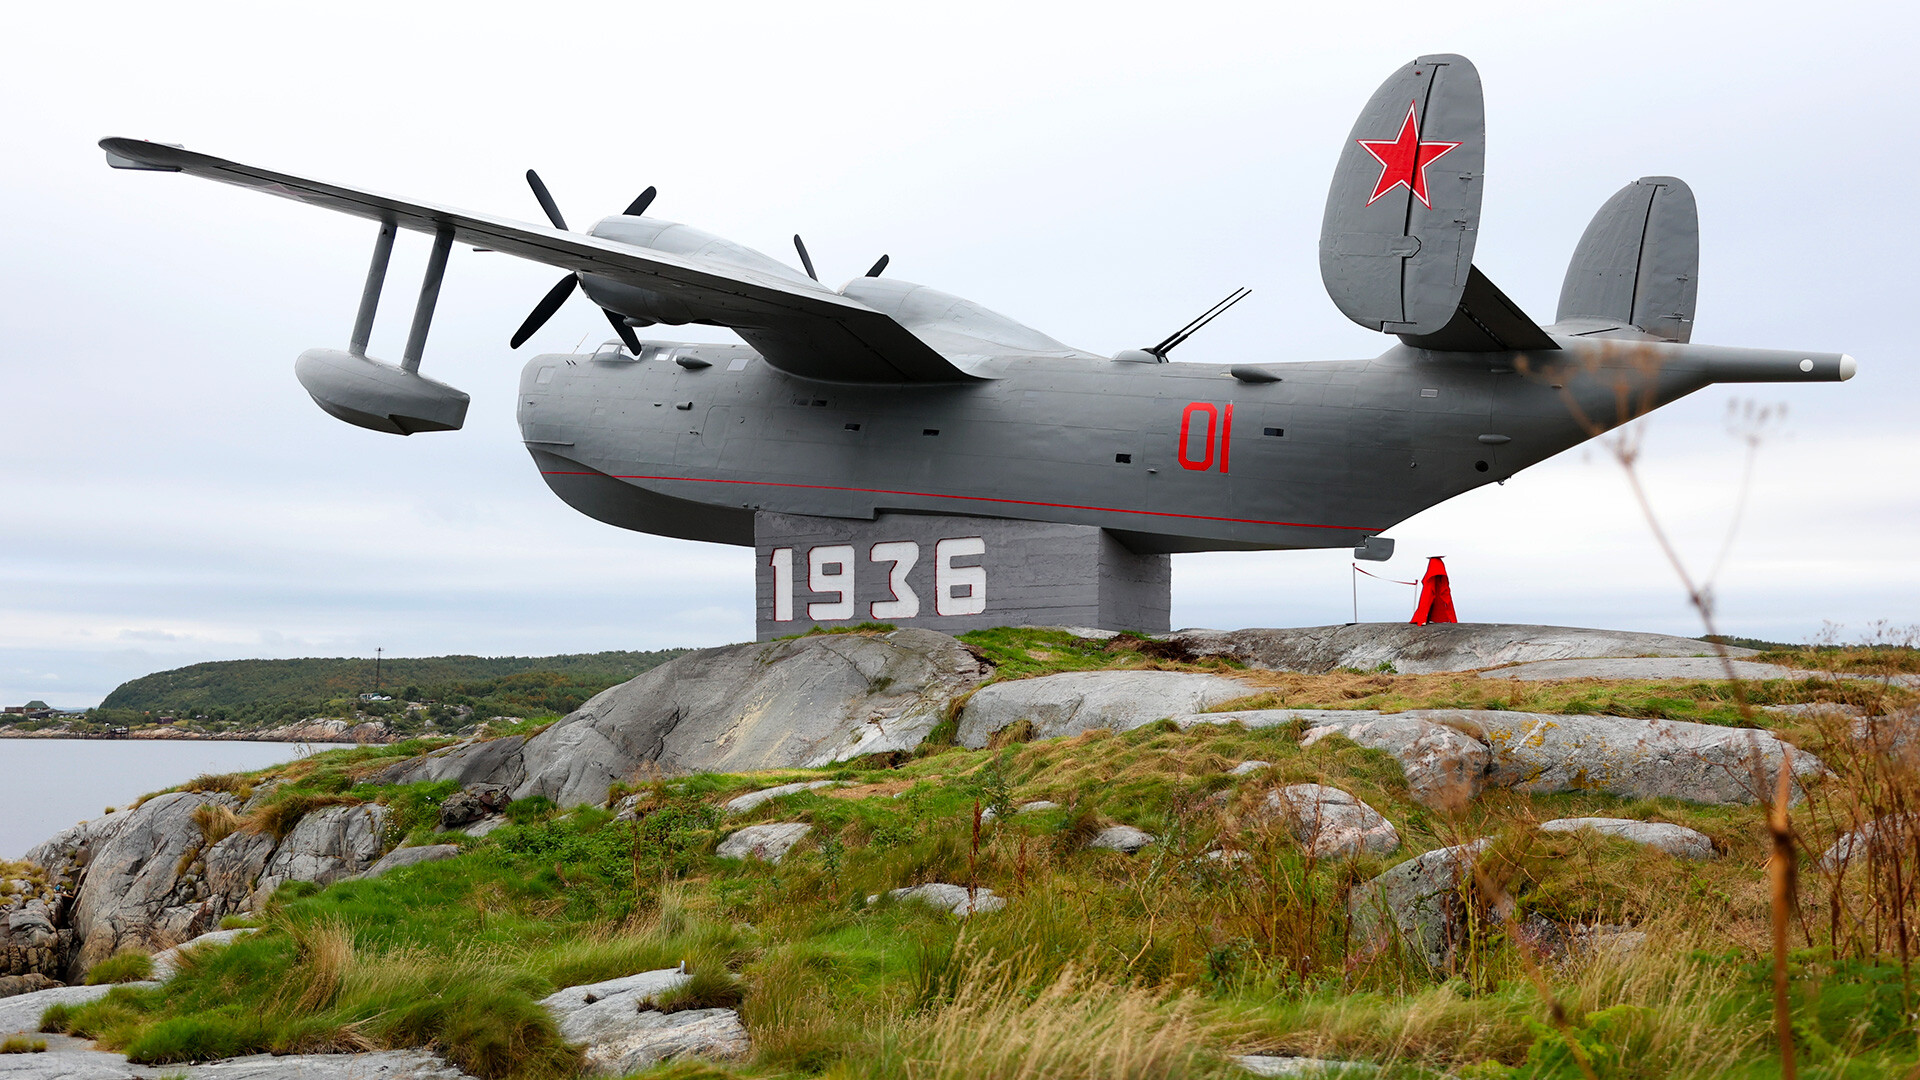 Monumento dedicado al hidroavión Be-6 en la bahía de Kola, región de Múrmansk. La inscripción "1936" en el pedestal indica el año de creación de la Fuerza Aérea de la Flota del Norte.